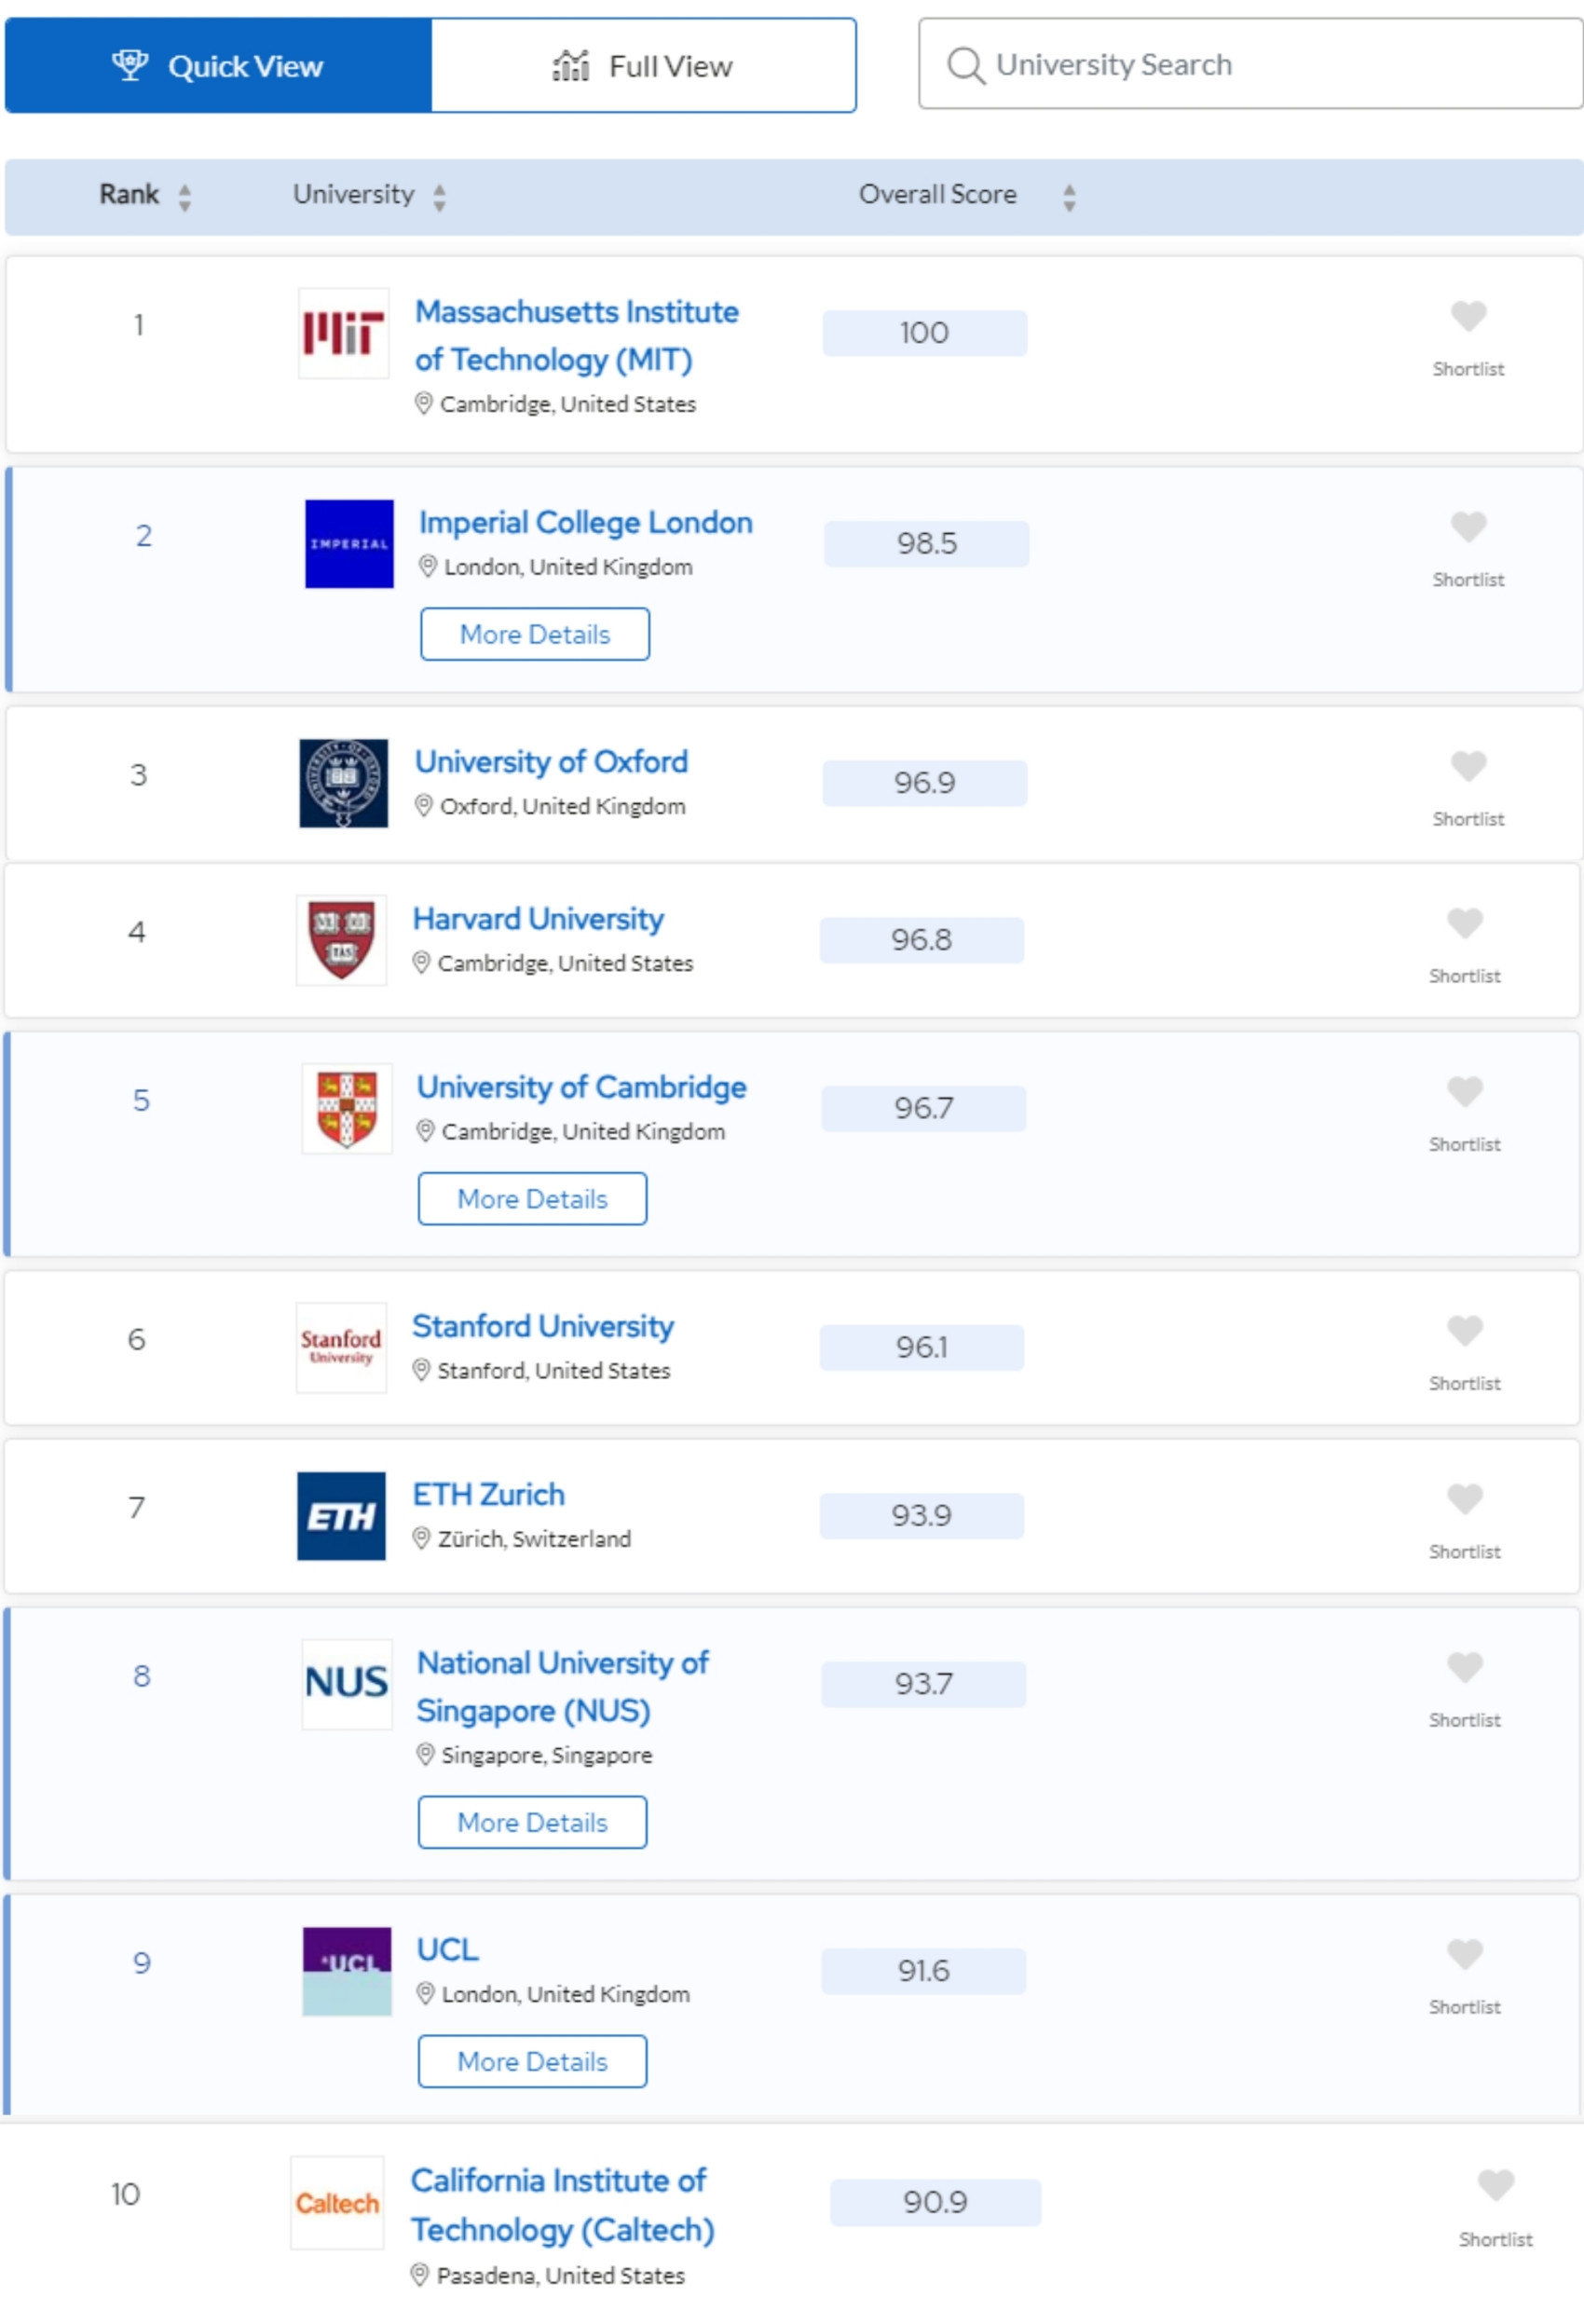 Nhiều đại học ở Việt Nam tăng hạng trên top thế giới